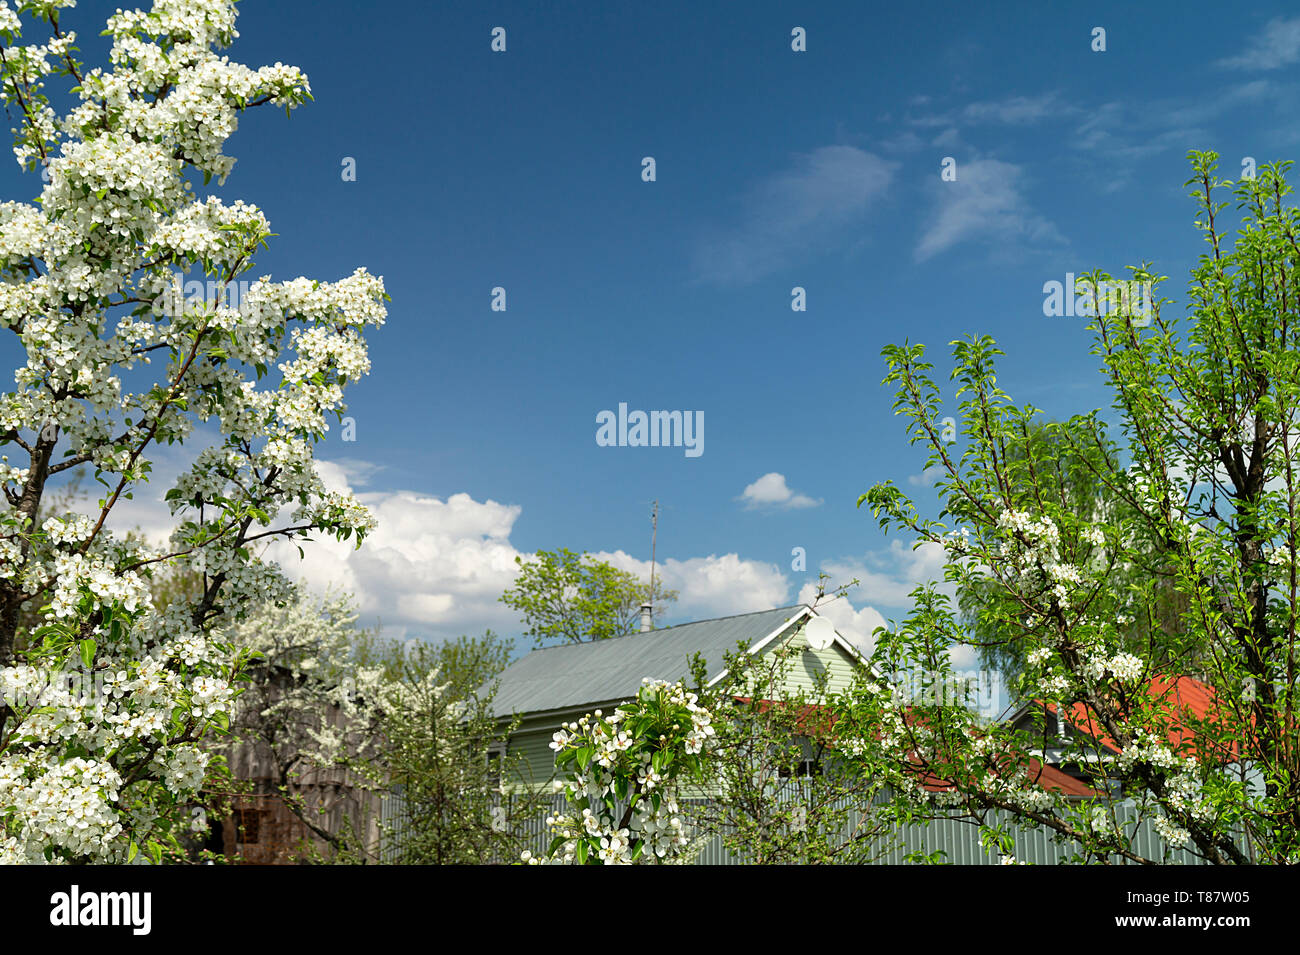 Primavera paisaje con árbol en flor en el jardín rural sobre fondo de cielo azul Foto de stock